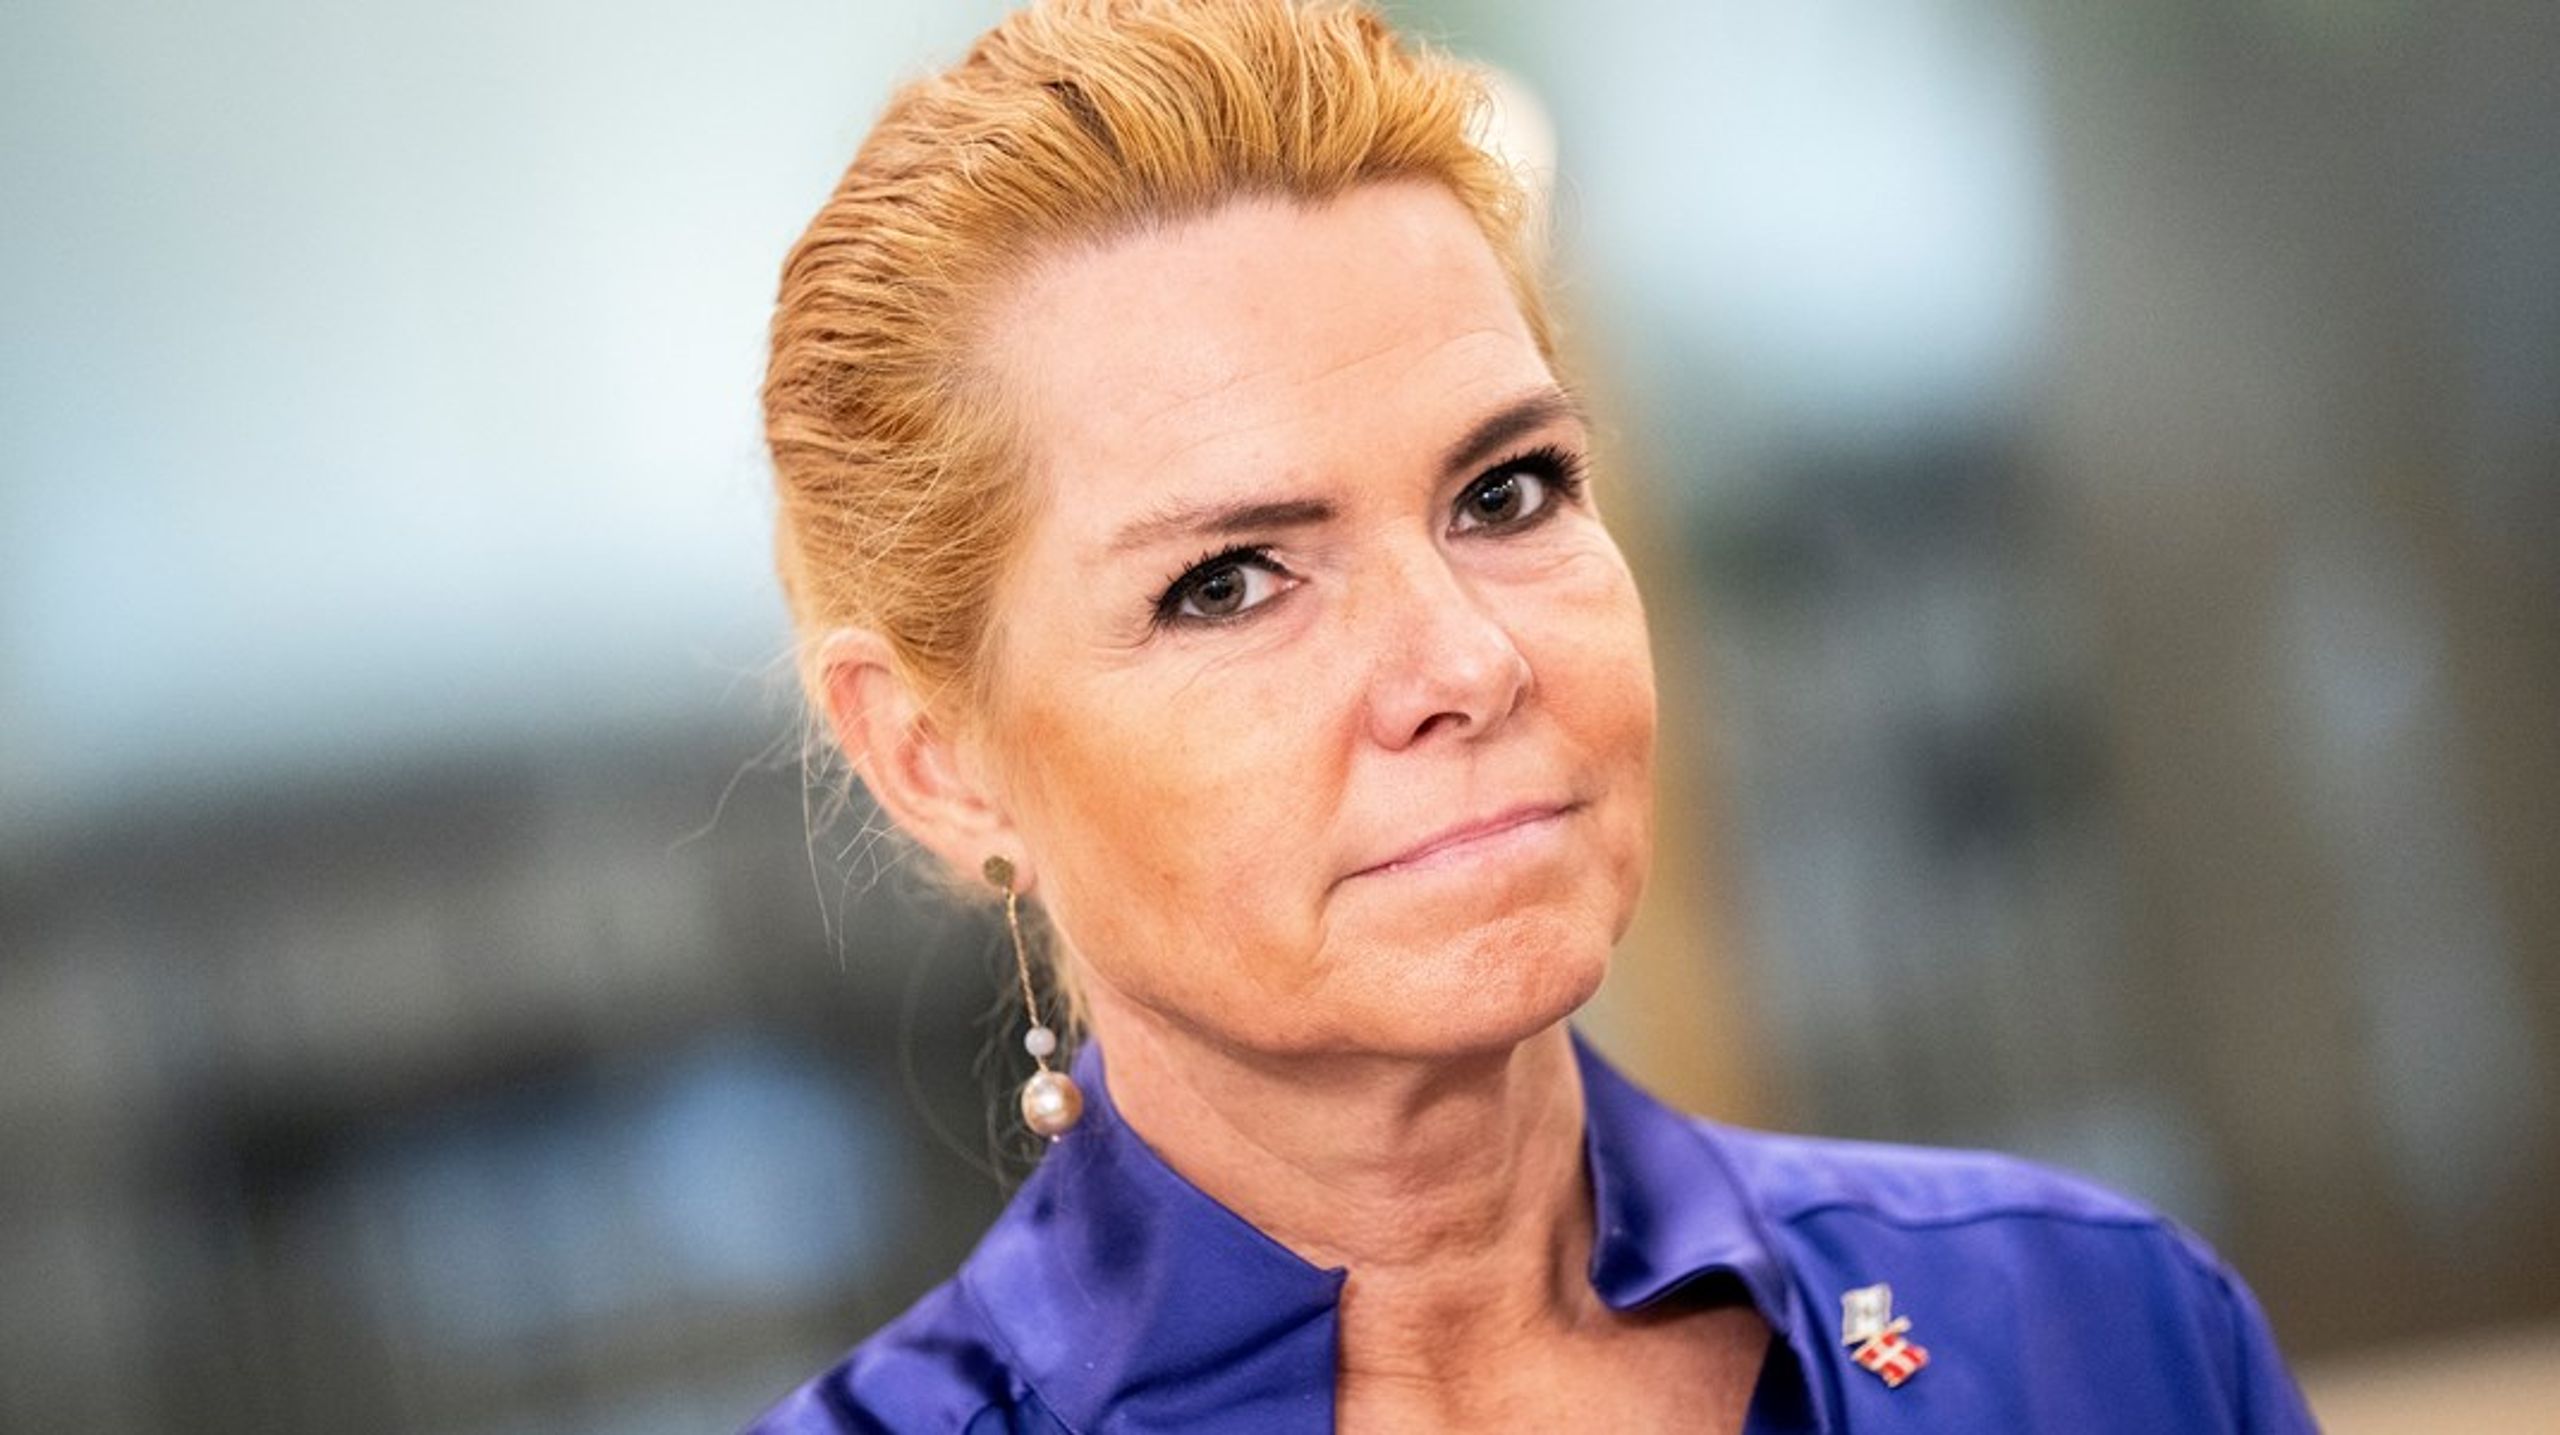 Danmarksdemokraterne må genopfinde deres politiske substans og anerkende, at fortællingen om Inger Støjberg som barnebrudenes martyr er fejlslået, skriver Nadeen Aiche.